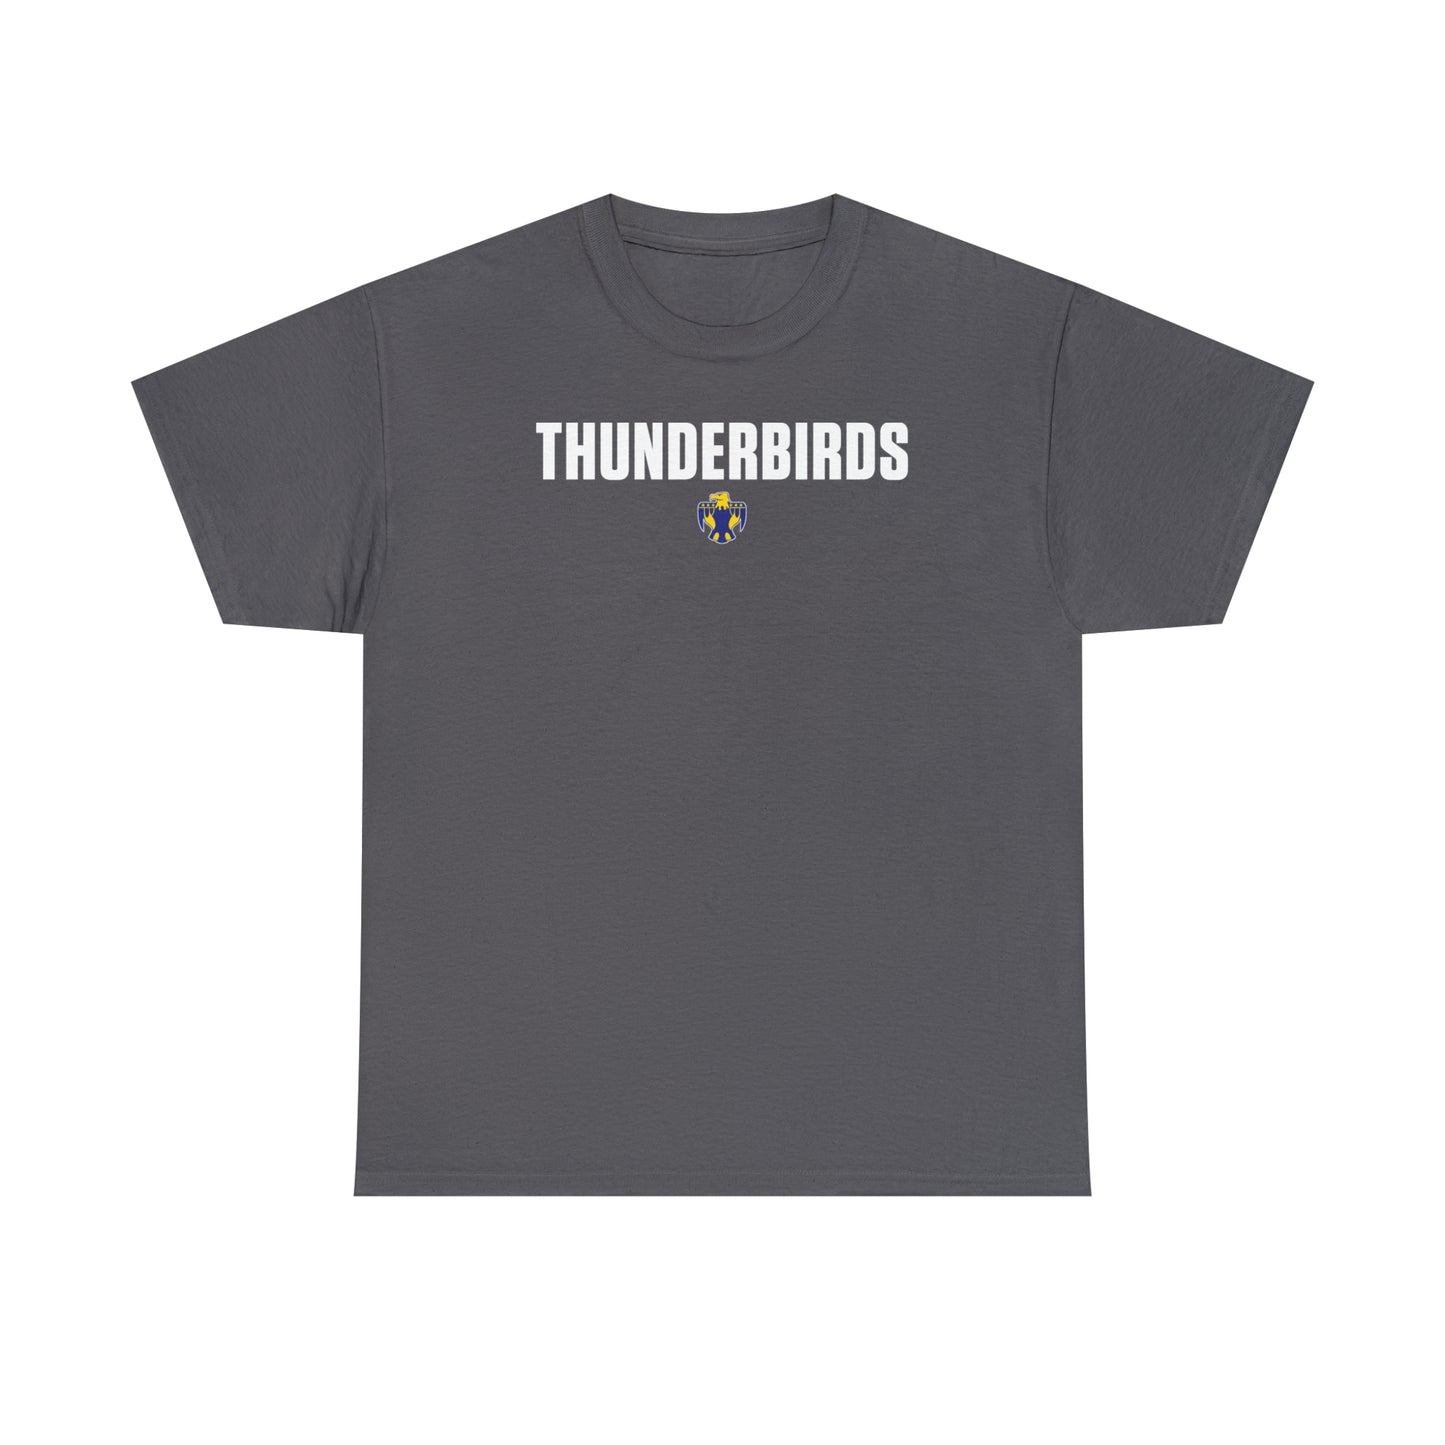 Thunderbird TShirt, Unisex Heavy Cotton Tee